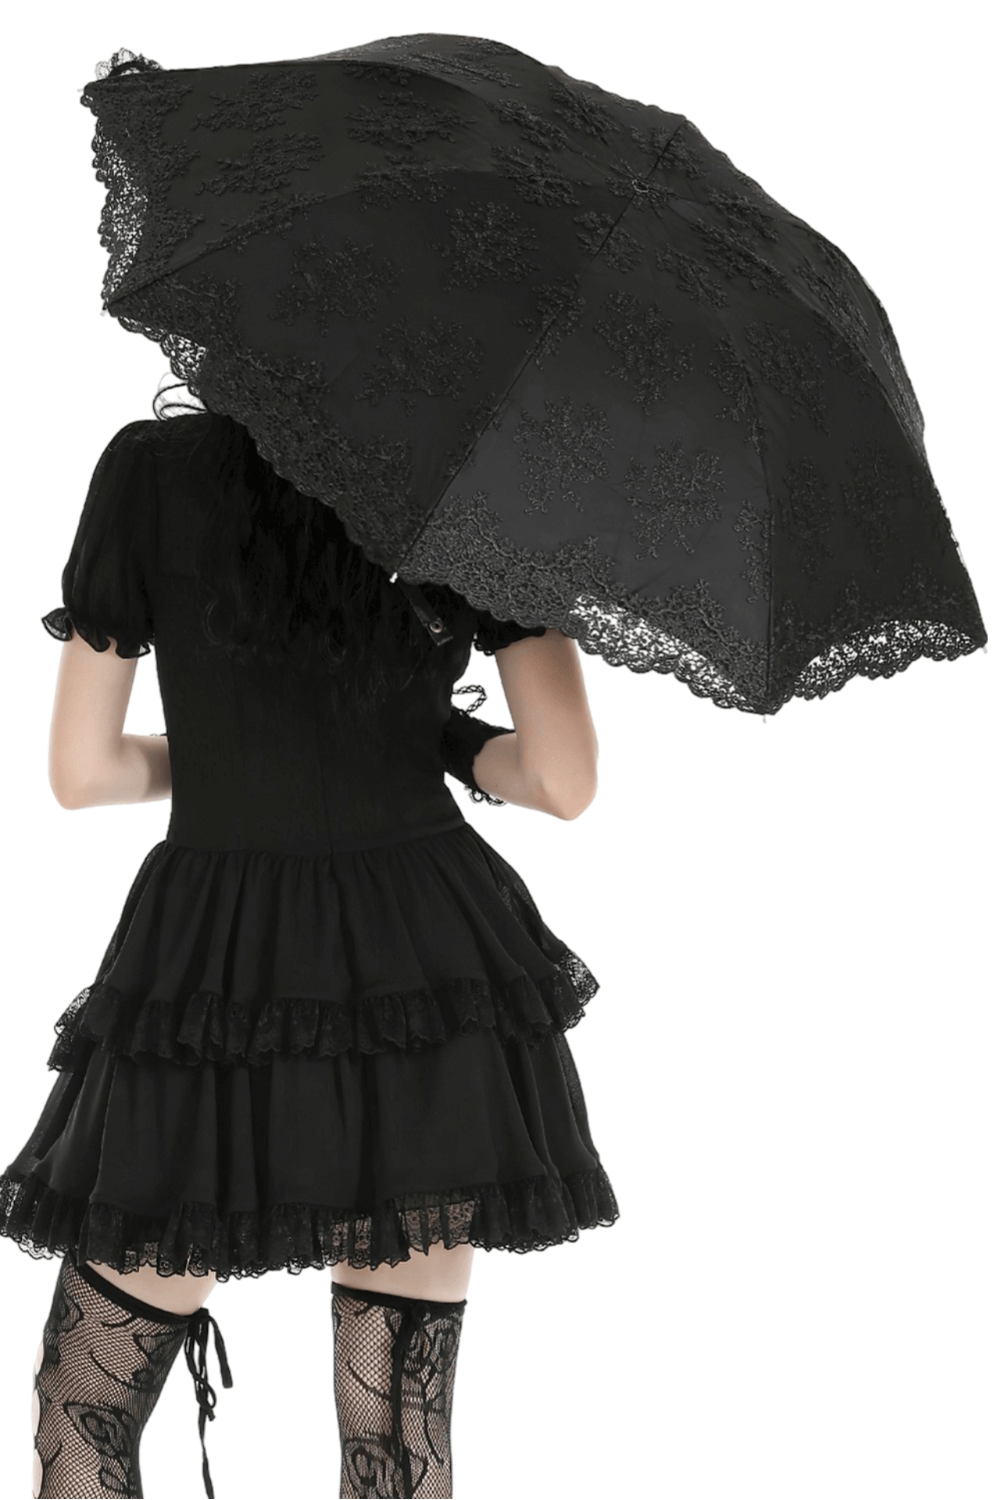 Parapluie gothique vintage avec bordure en dentelle et poignée en bois